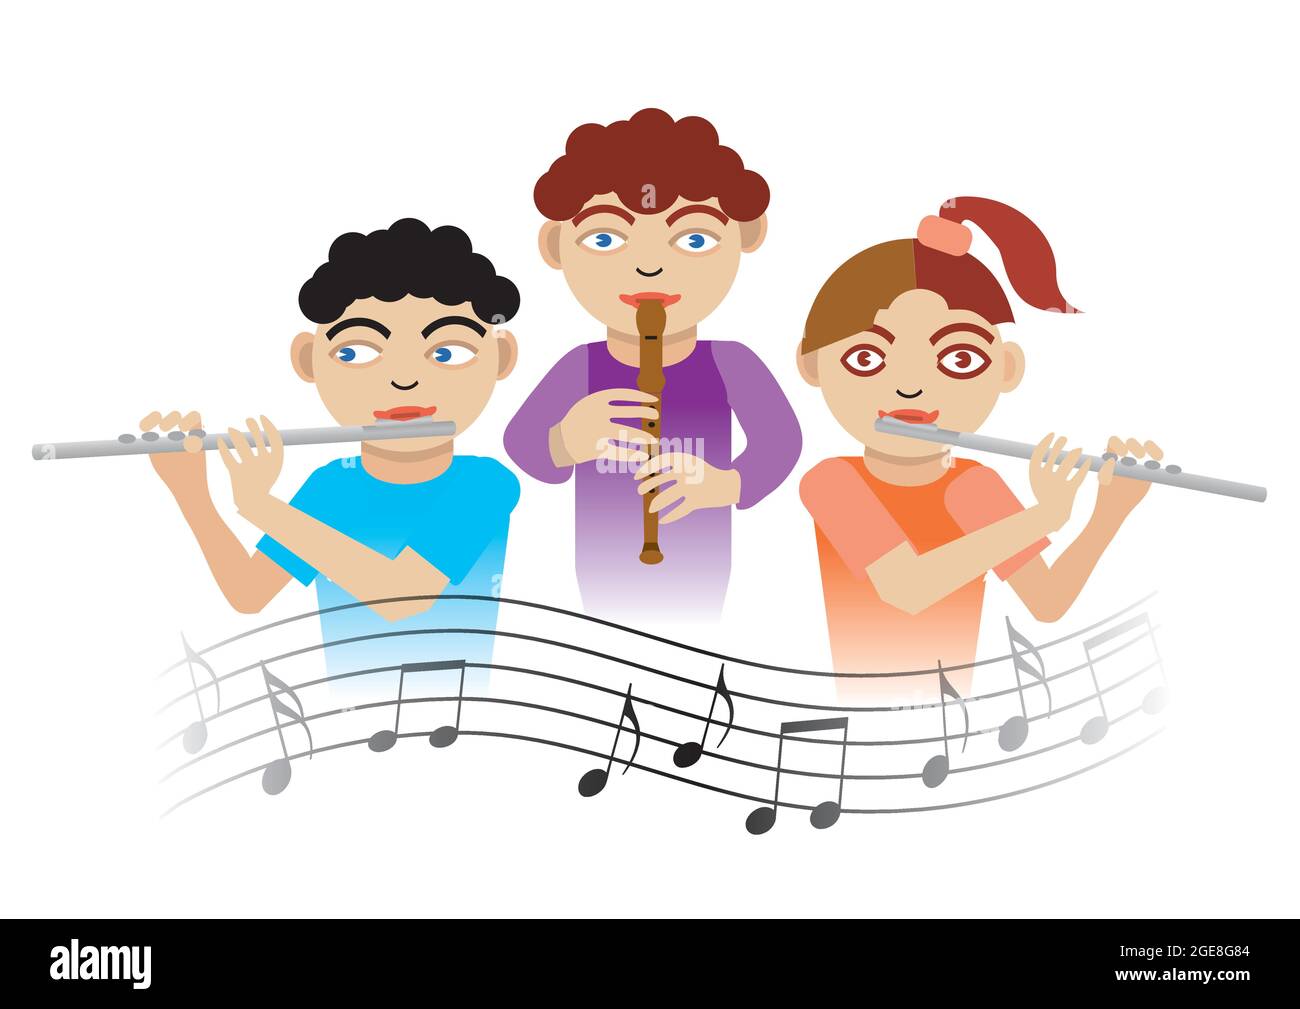 Bambini che giocano sul flauto. Illustrazione di tre bambini con flauto e note musicali.Vector disponibile Illustrazione Vettoriale